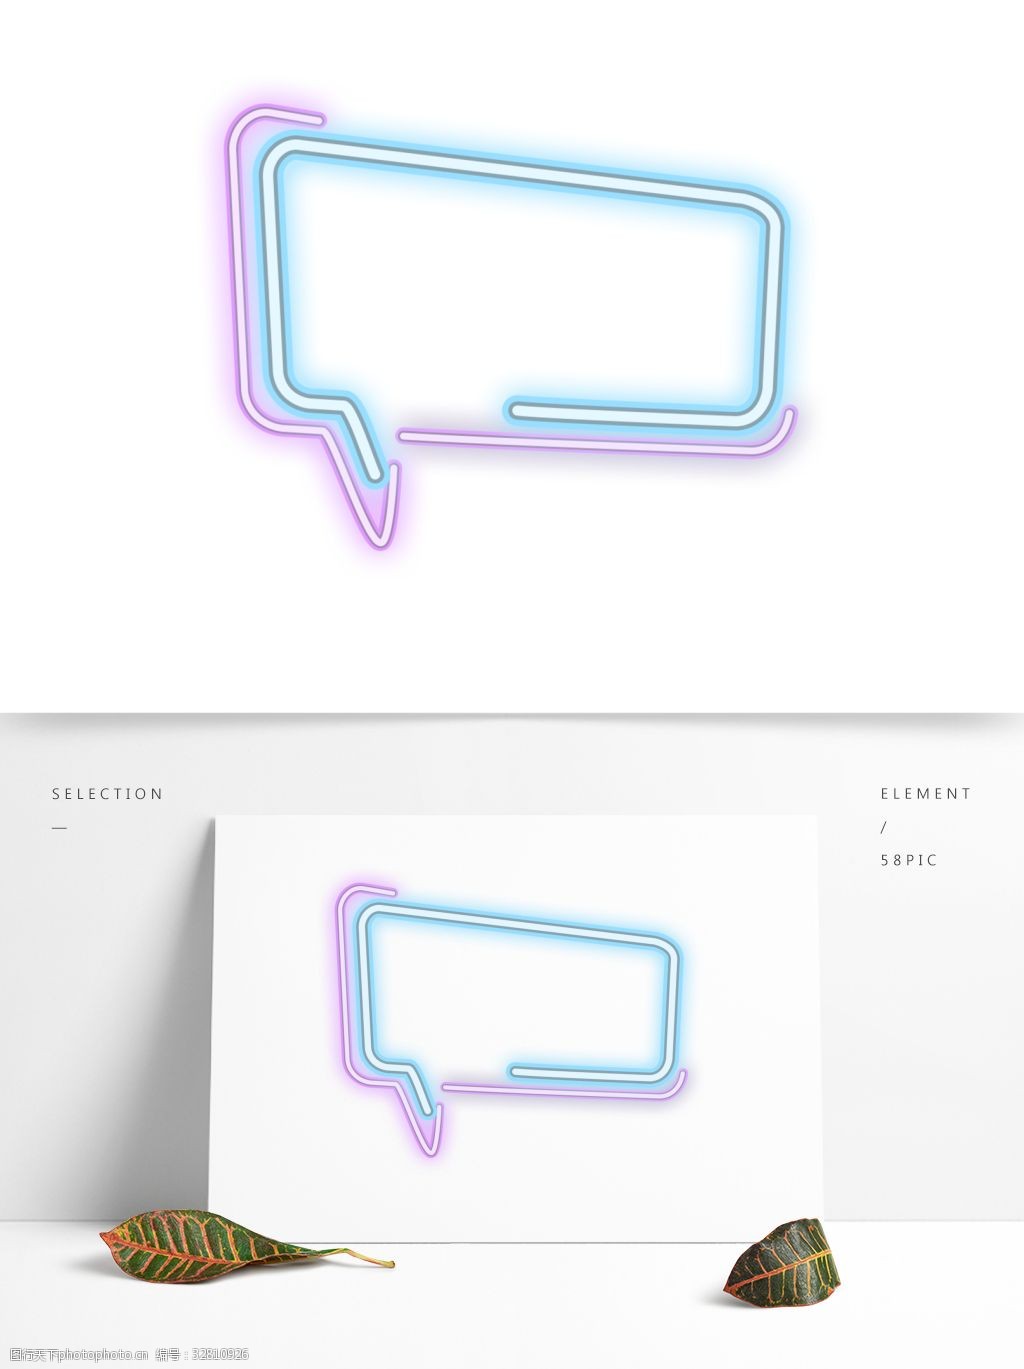 关键词:创意霓虹对话框素材 创意 简约 霓虹光 对话框 边框 设计素材